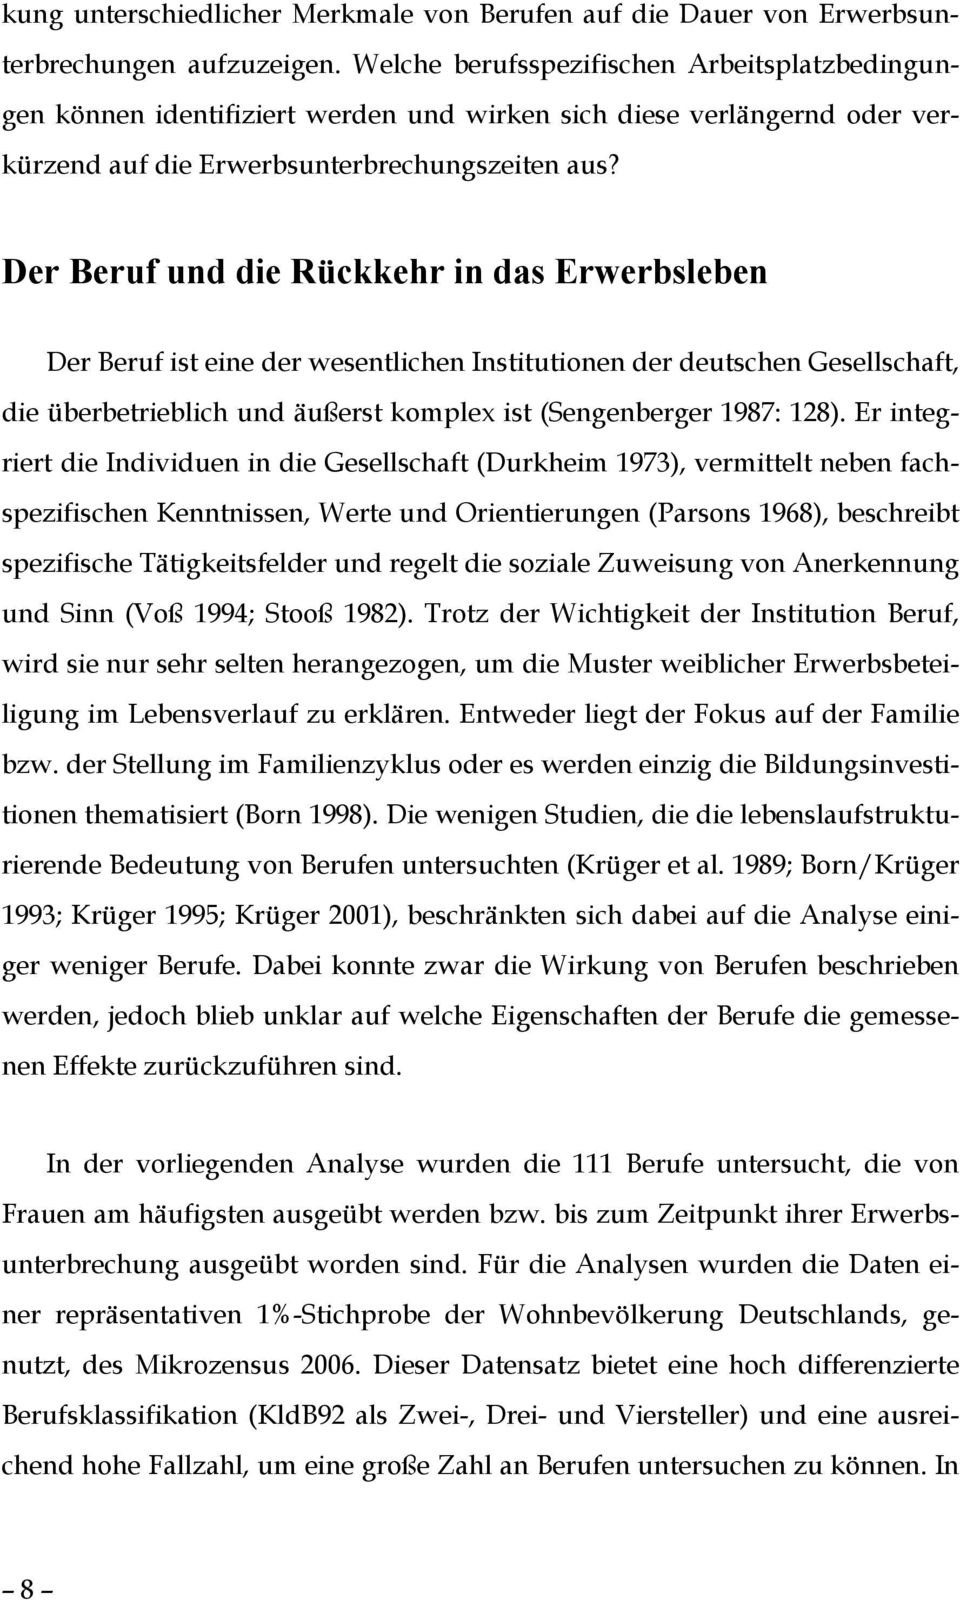 Der Beruf und die Rückkehr in das Erwerbsleben Der Beruf ist eine der wesentlichen Institutionen der deutschen Gesellschaft, die überbetrieblich und äußerst komplex ist (Sengenberger 1987: 128).